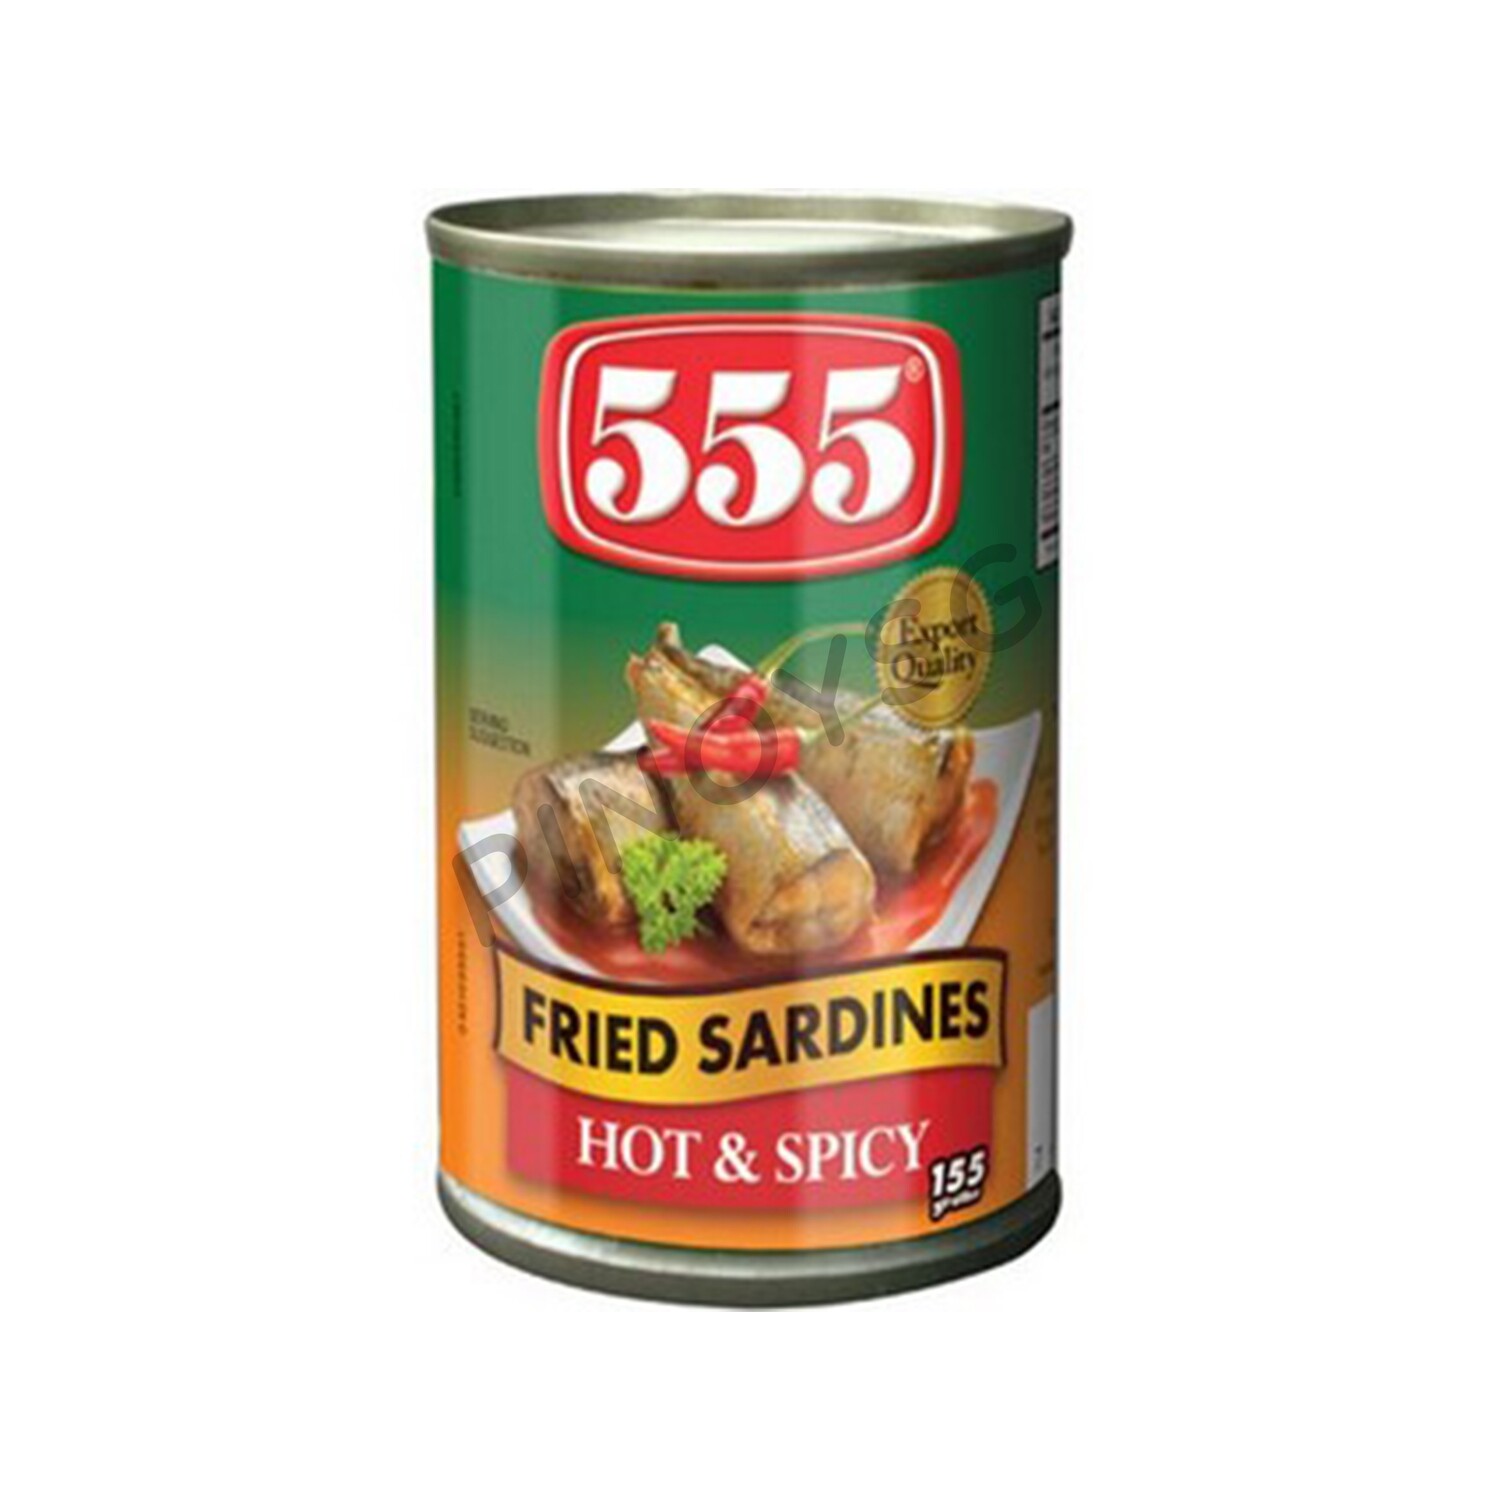 555 Fried Sardines Hot & Spicy, 155g